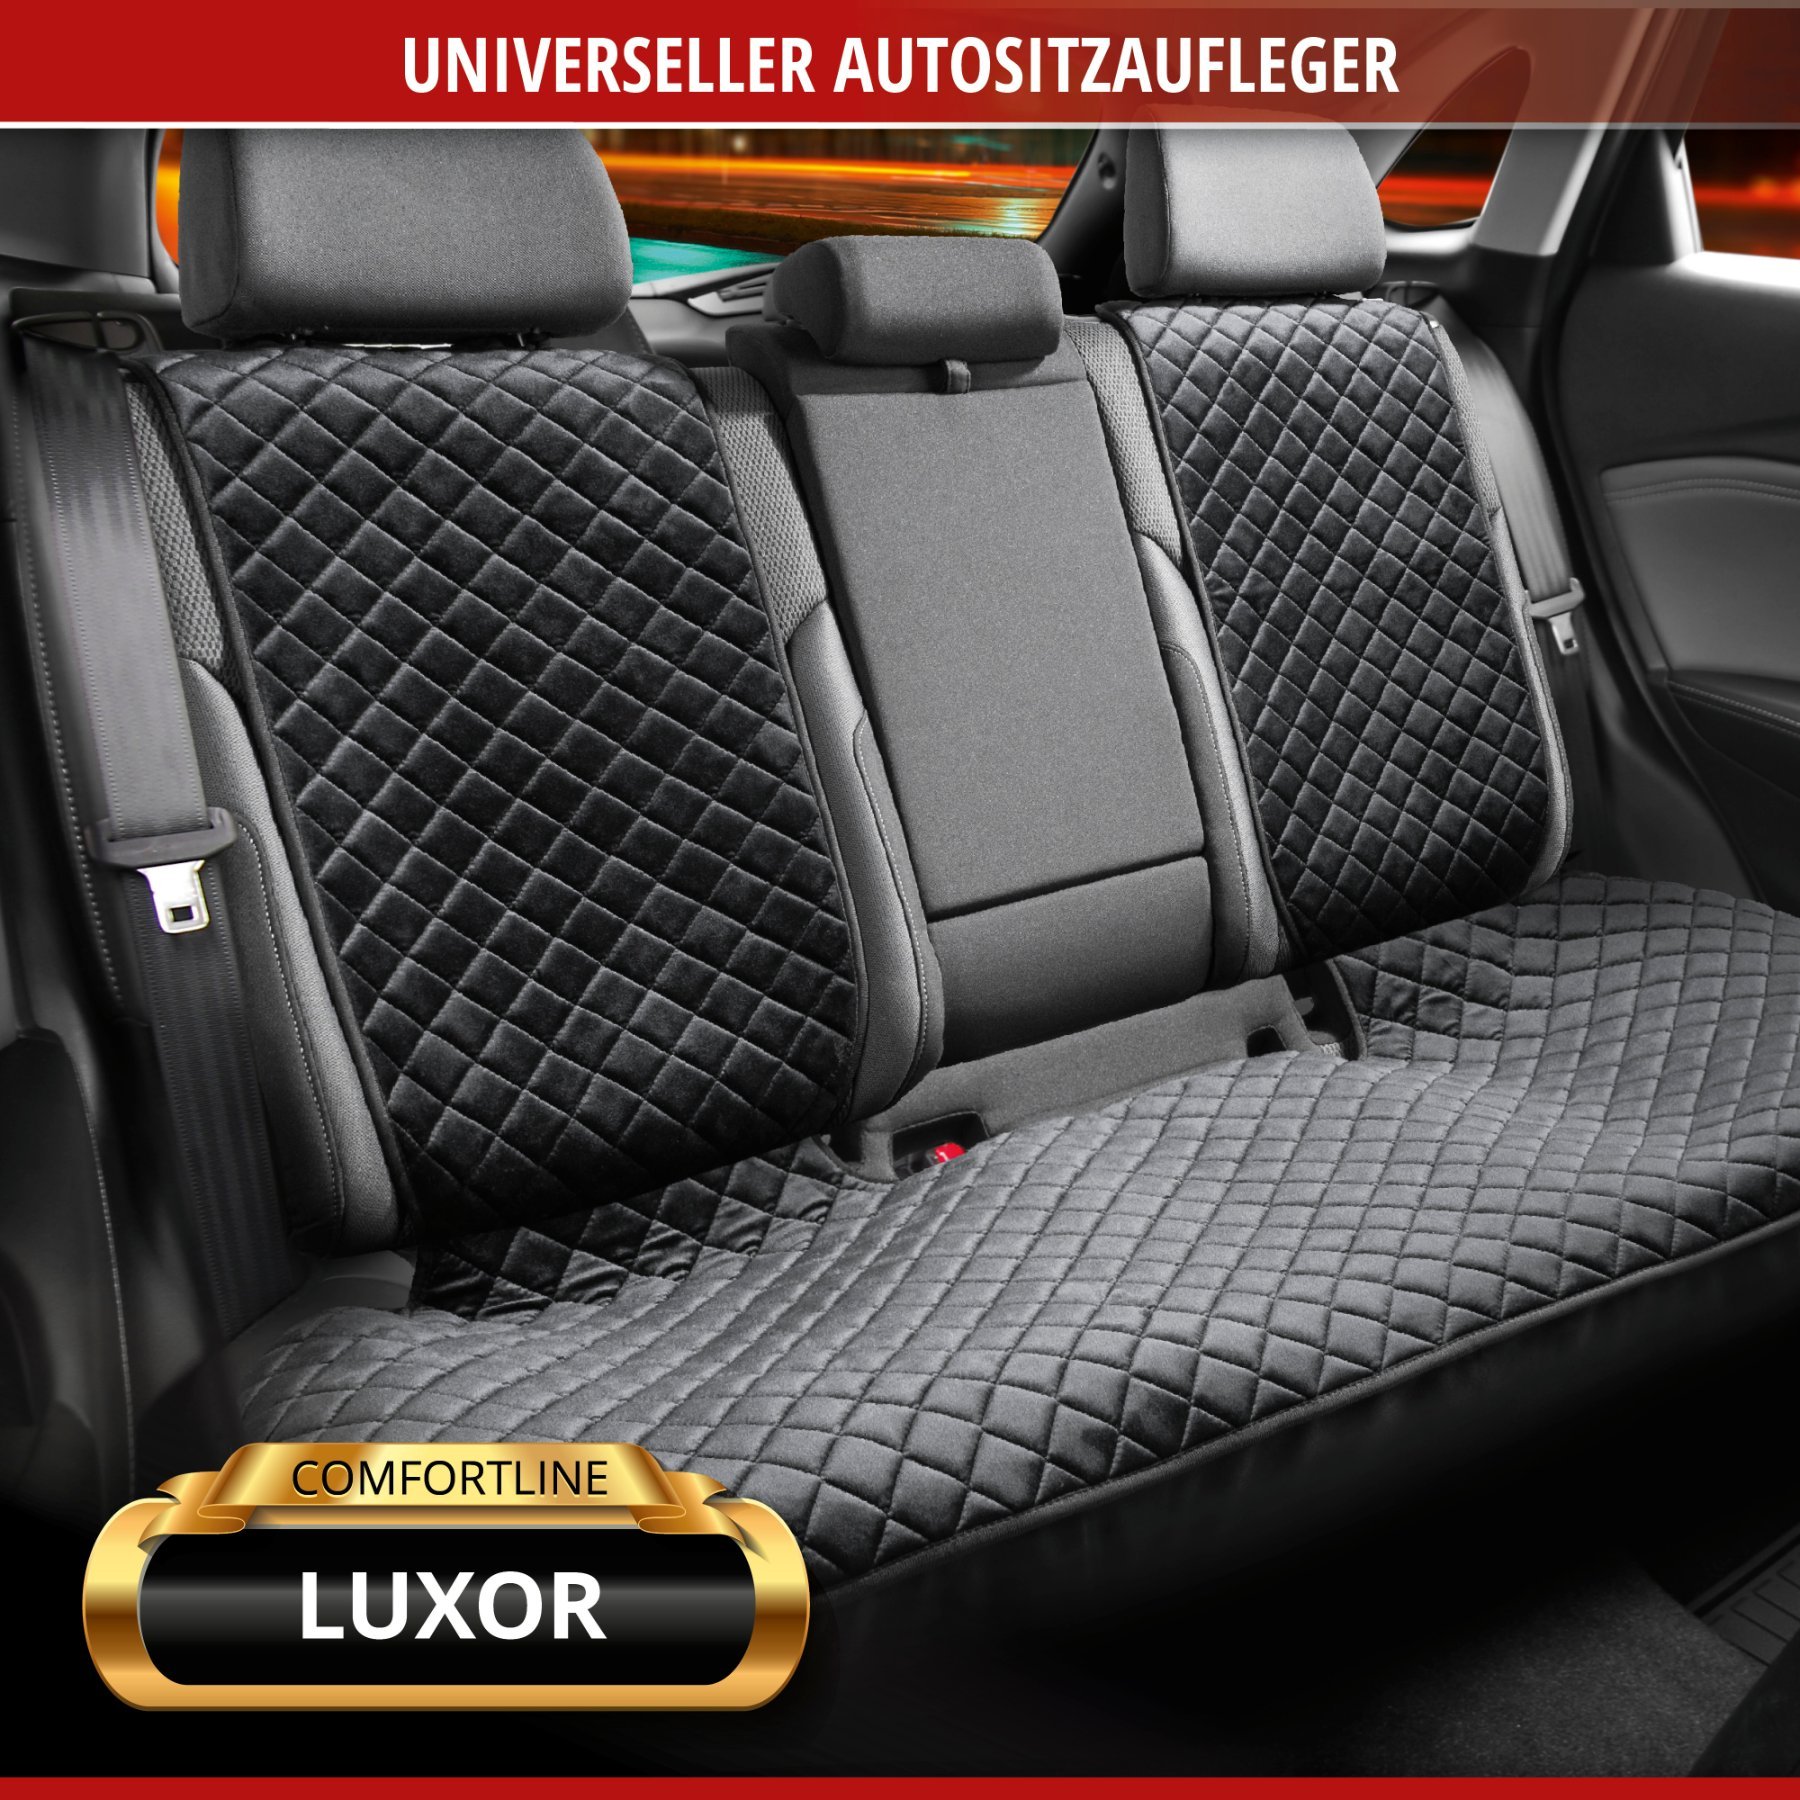 PKW-Sitzaufleger Comfortline Luxor inkl. Anti-Rutsch-Beschichtung, Auto-Sitzauflage für 1 Rücksitzbank